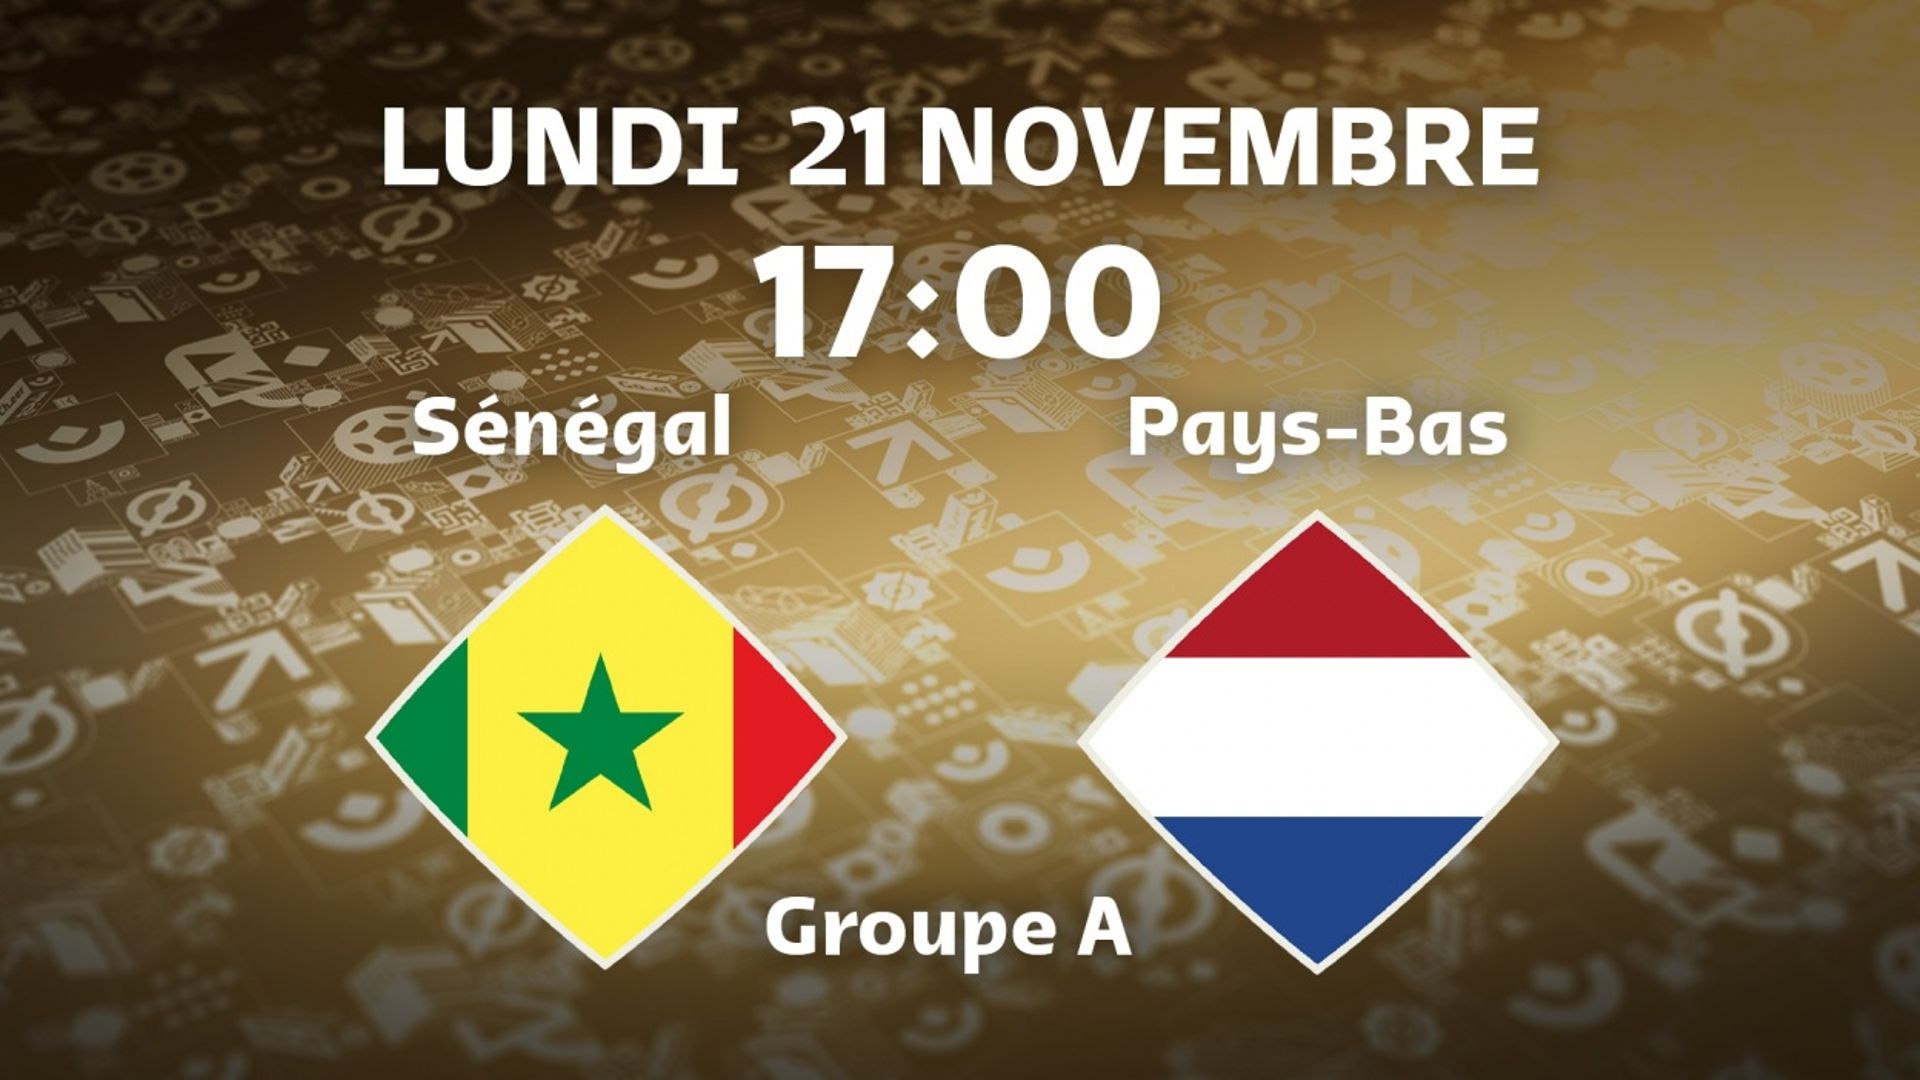 Sénégal - Pays-Bas streaming live vidéo - Auvio